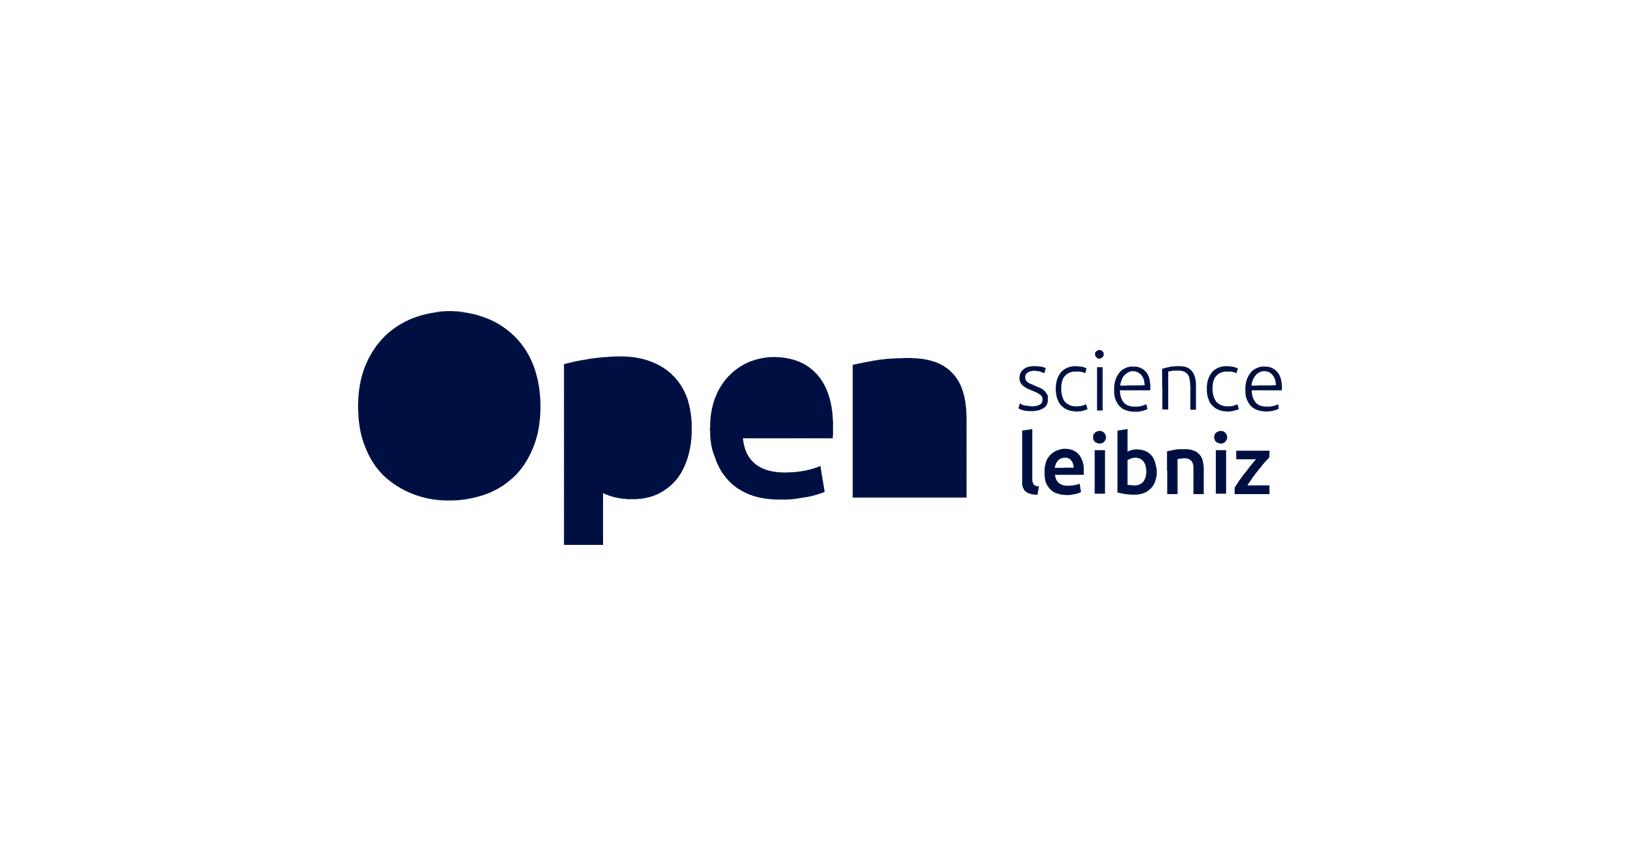 (c) Leibniz-openscience.de